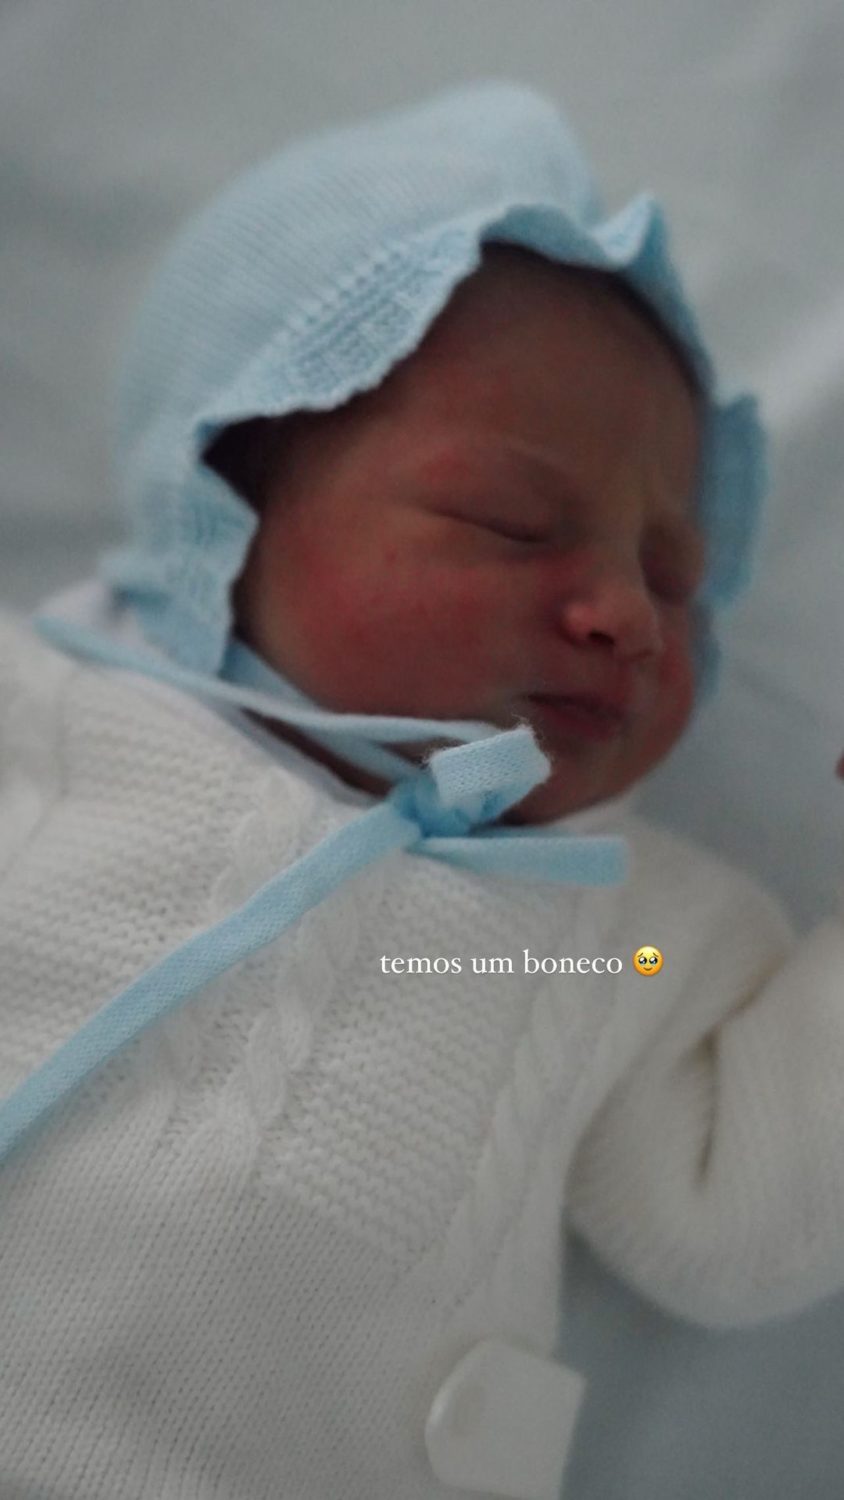 Francisco Garcia revela novas fotos do filho recém-nascido: &#8220;Temos um boneco&#8230;&#8221;